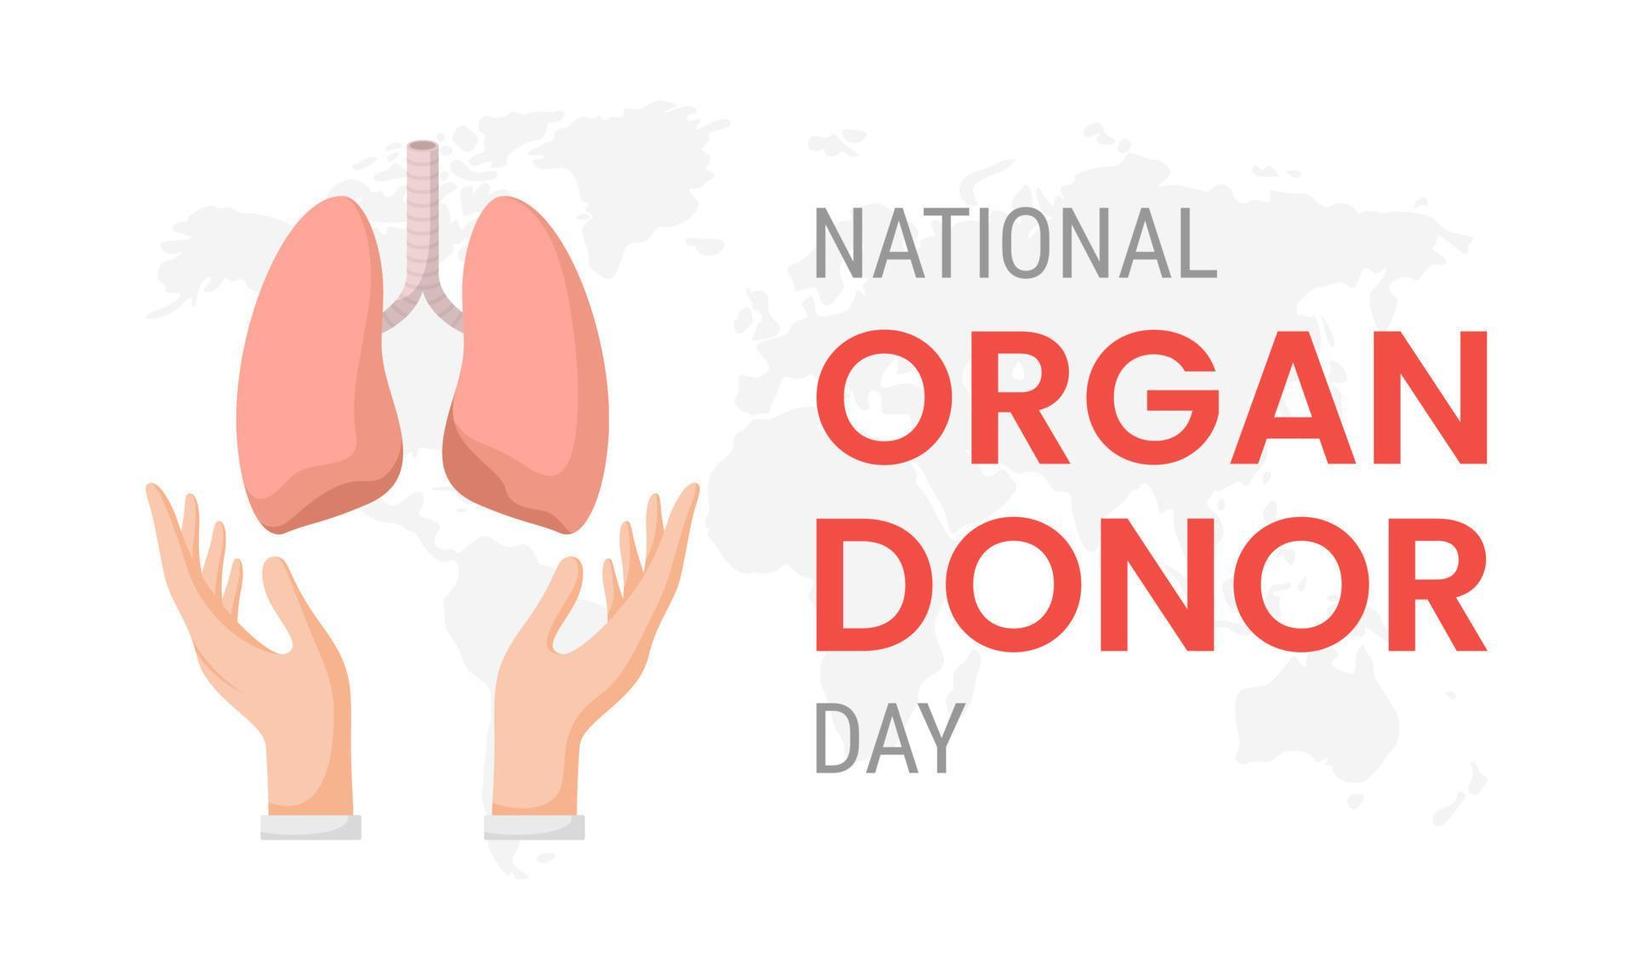 dia nacional del donante de organos con pulmones vector